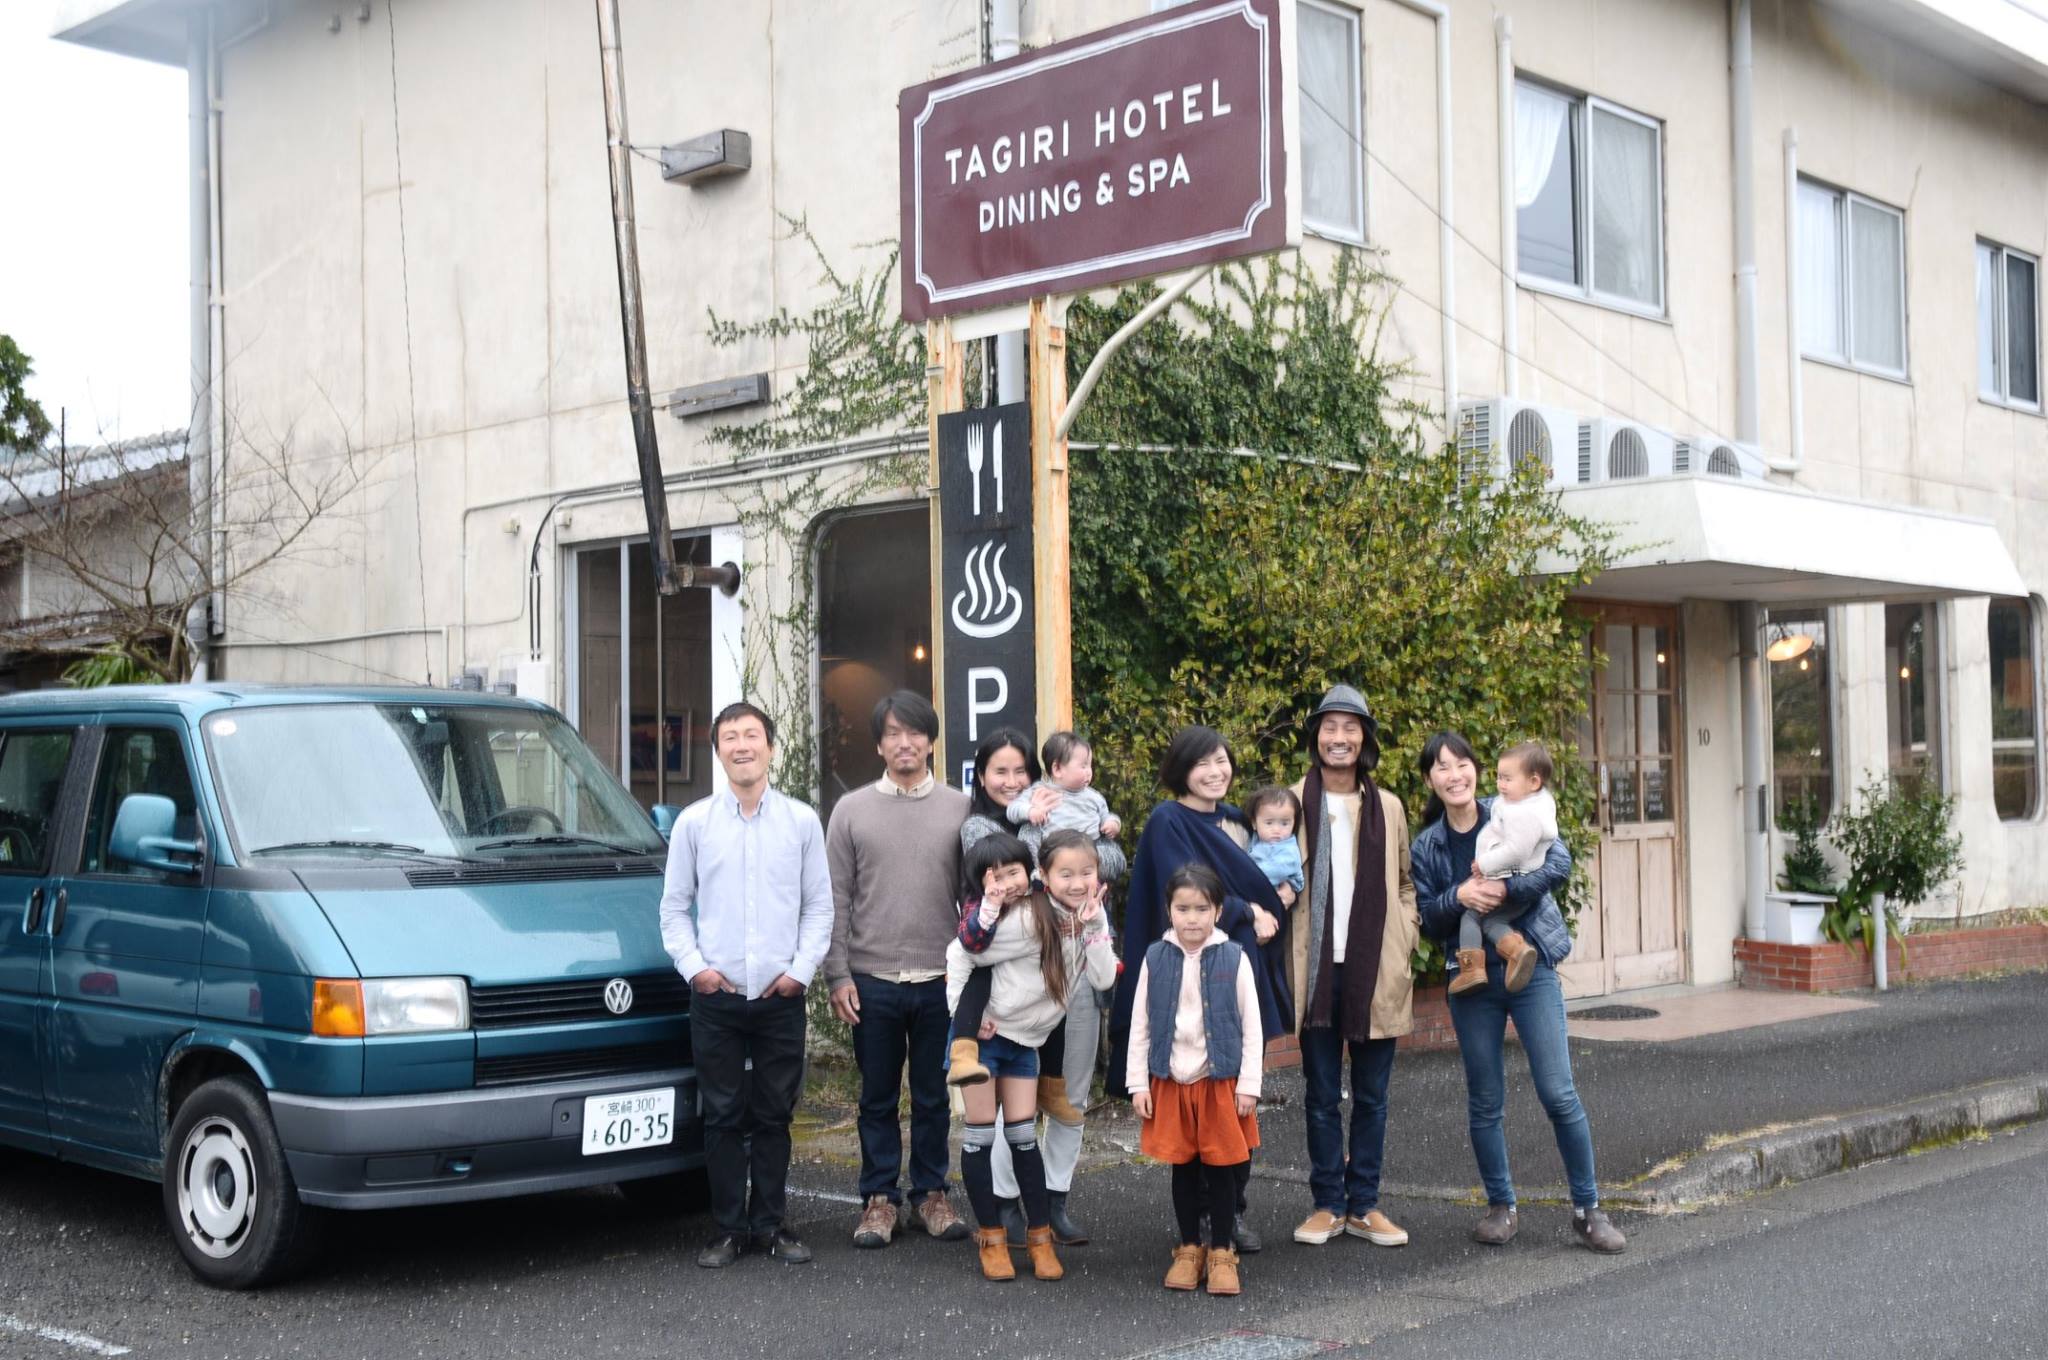 宮崎の限界集落 １日３組のリノベーションホテル Tagiri Hotel による 心が滾る豊かな暮らしのヒント を伝える本を作りたい Greenfunding